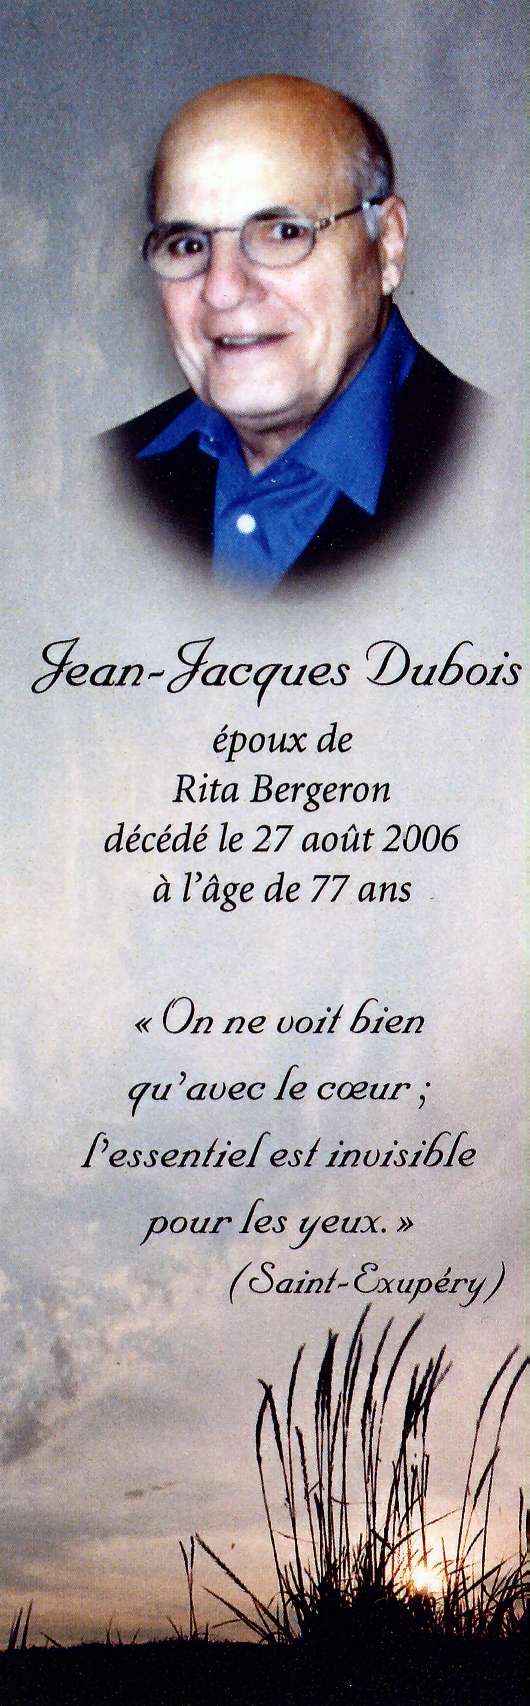 Jean-Jacques Dubois (Carte funéraire)